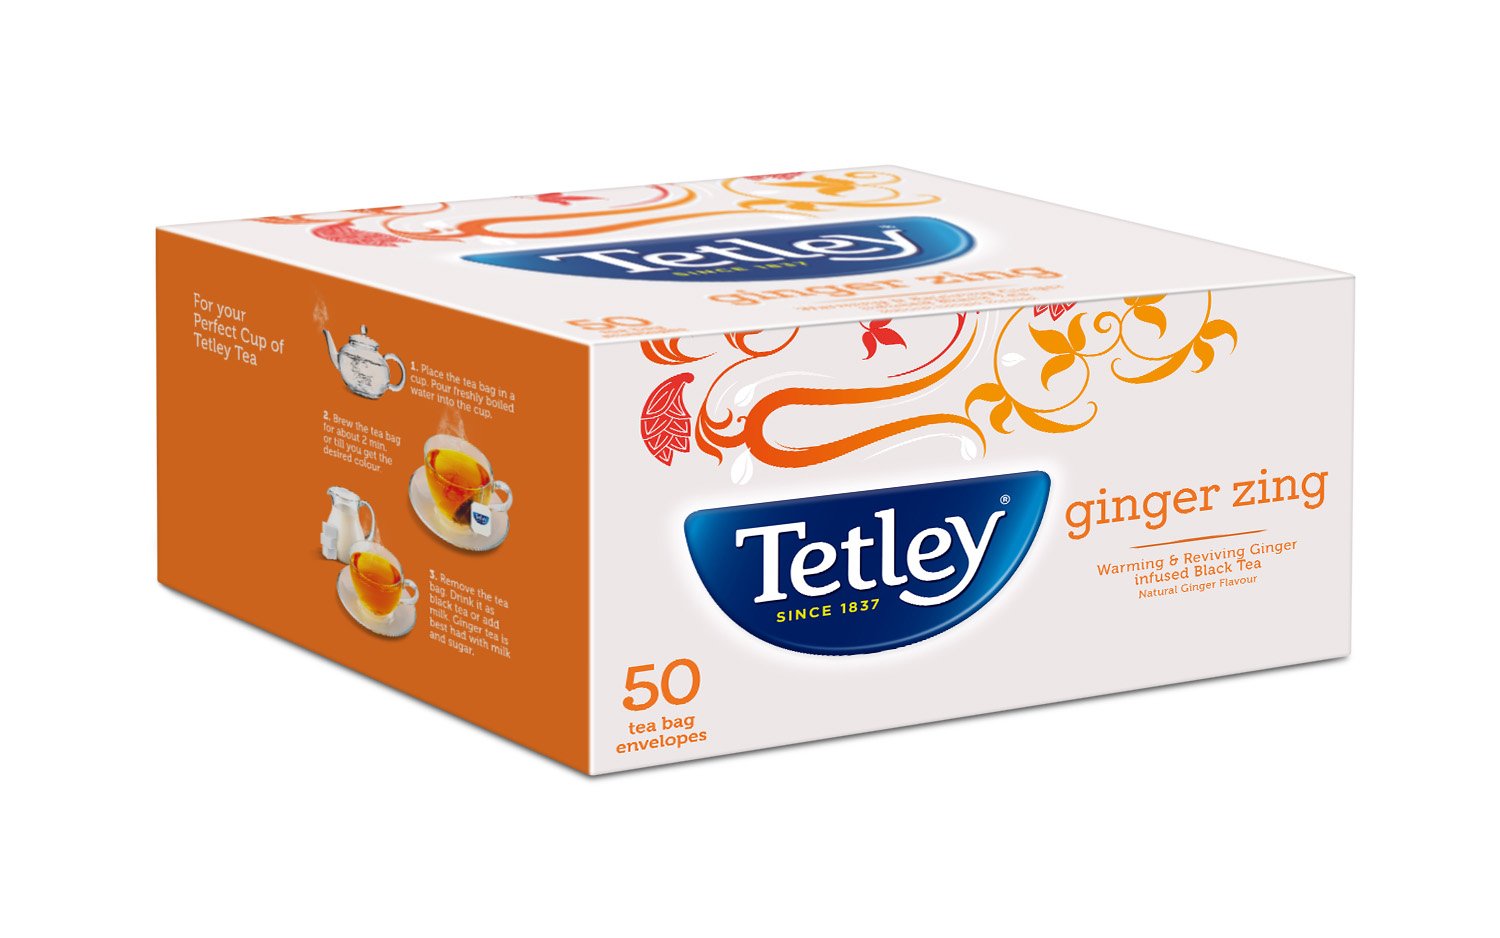 Tetley Tea Bag 100 gm